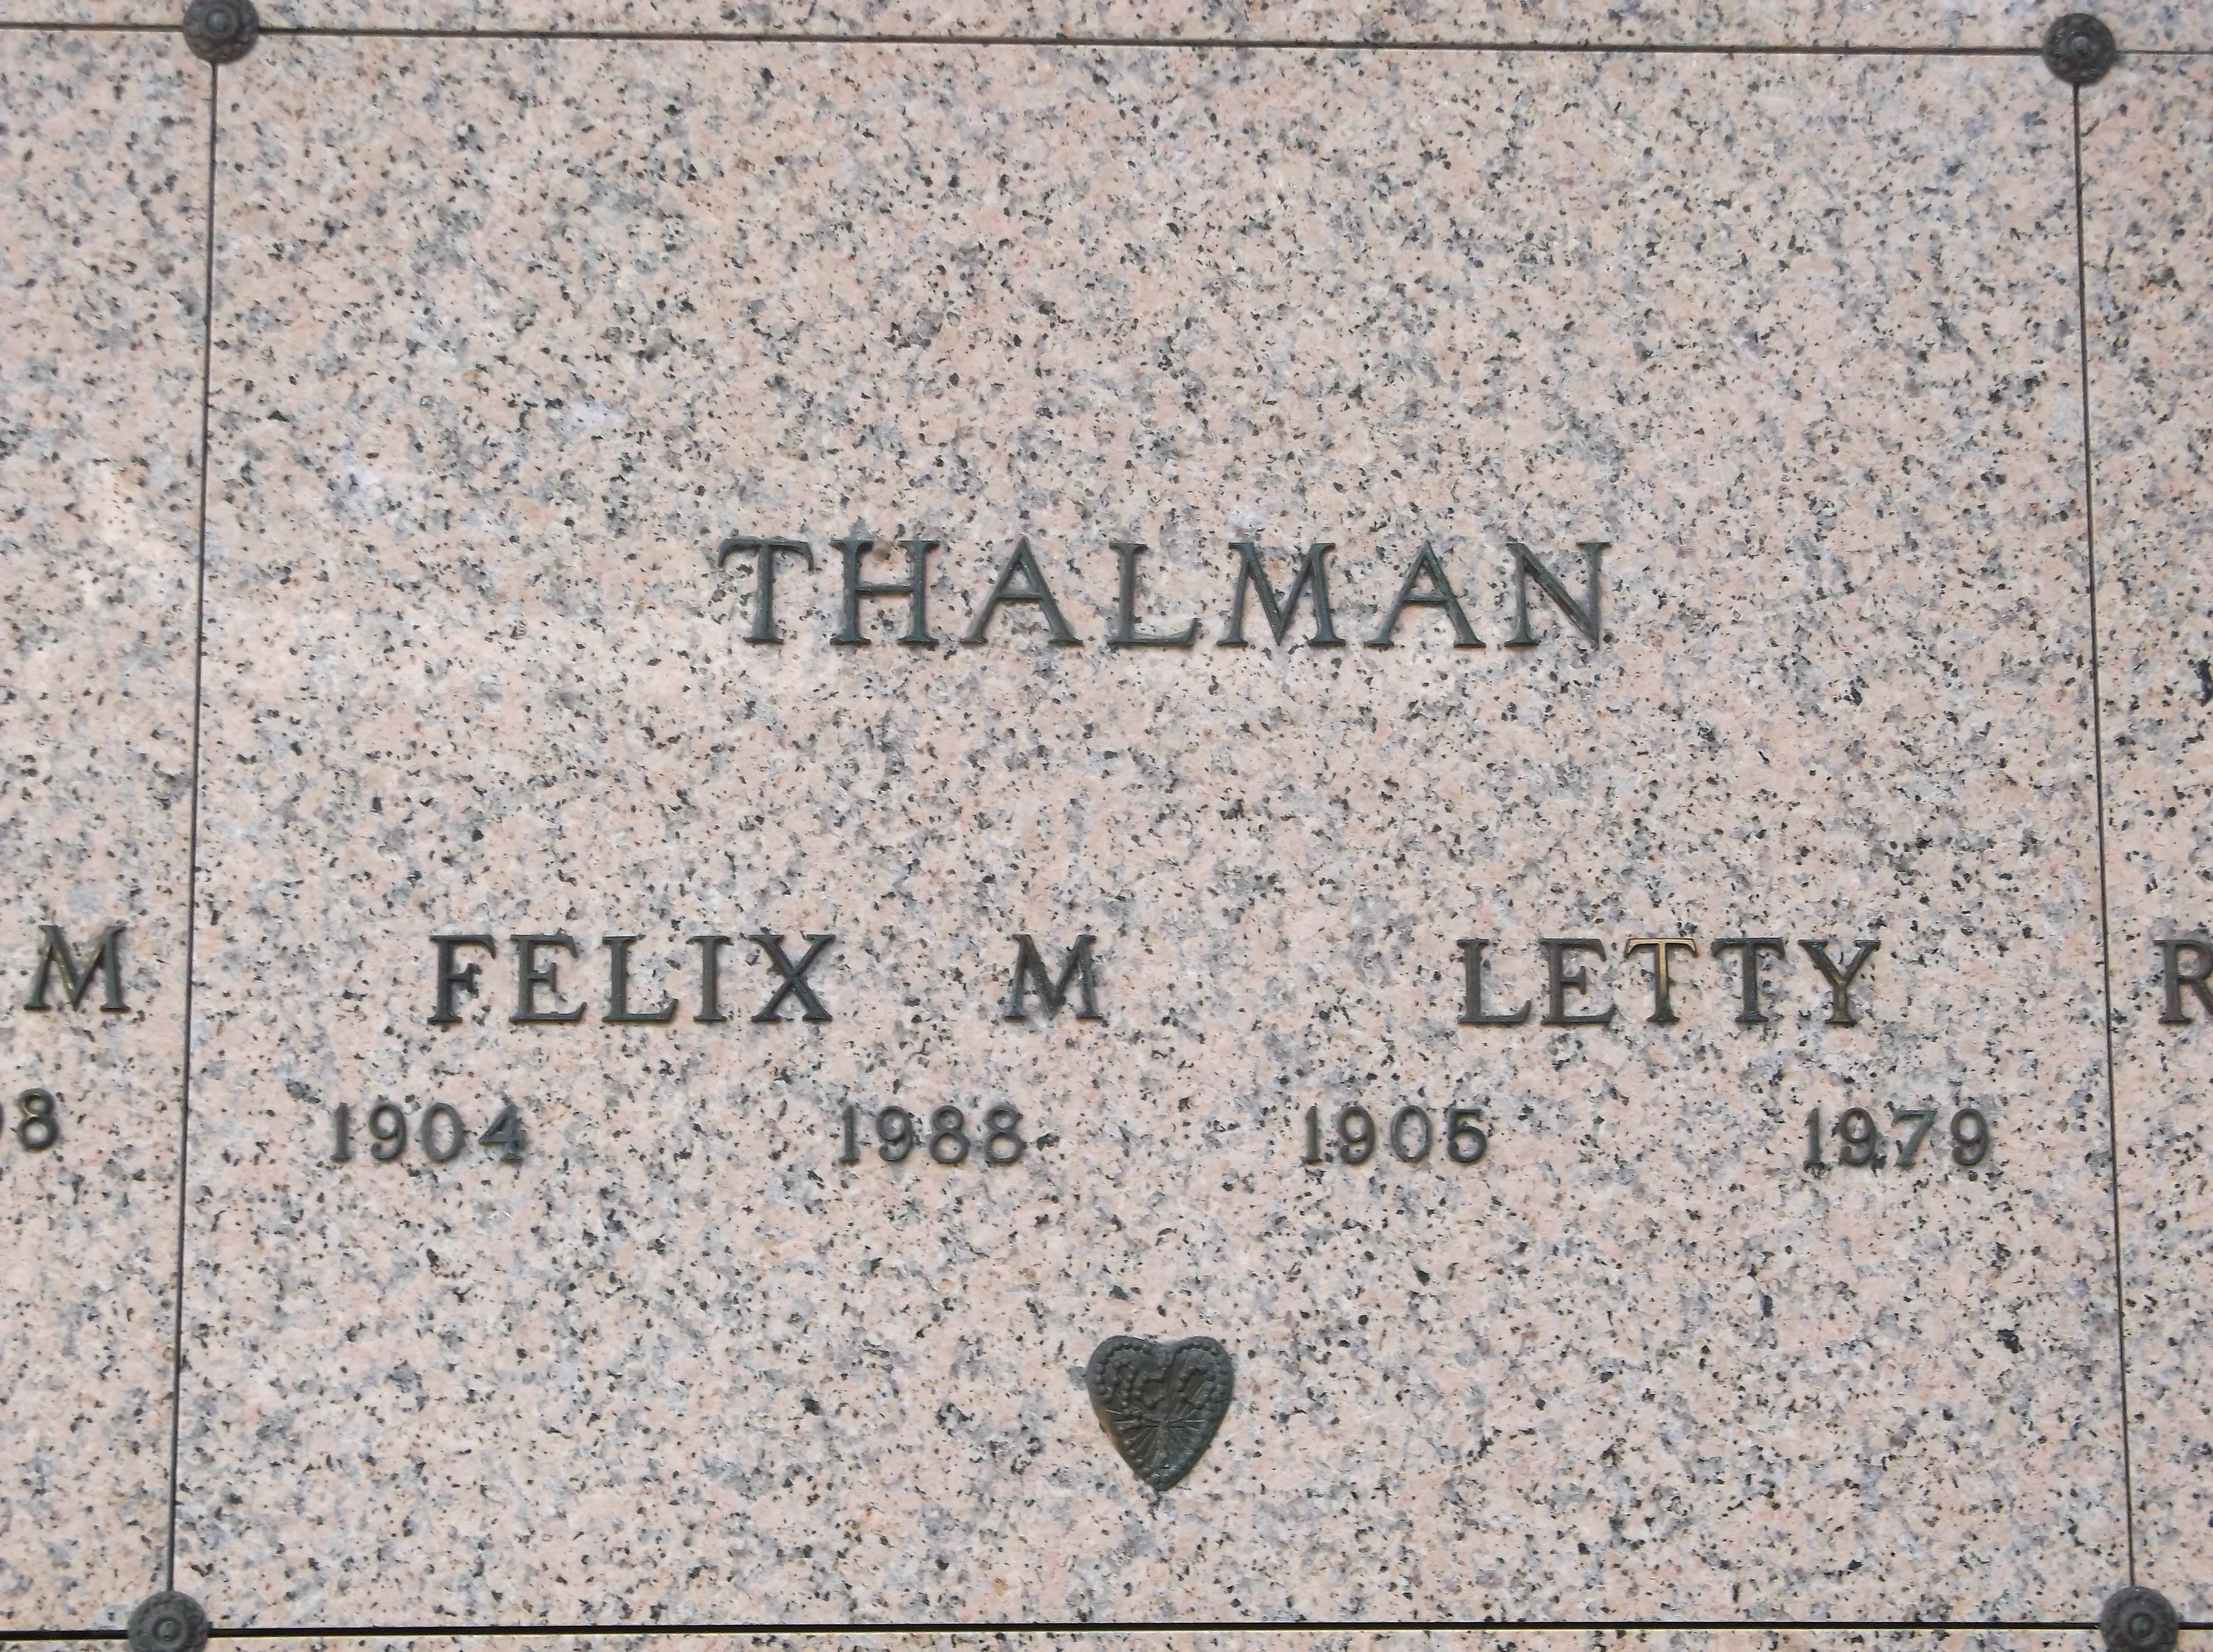 Letty Thalman